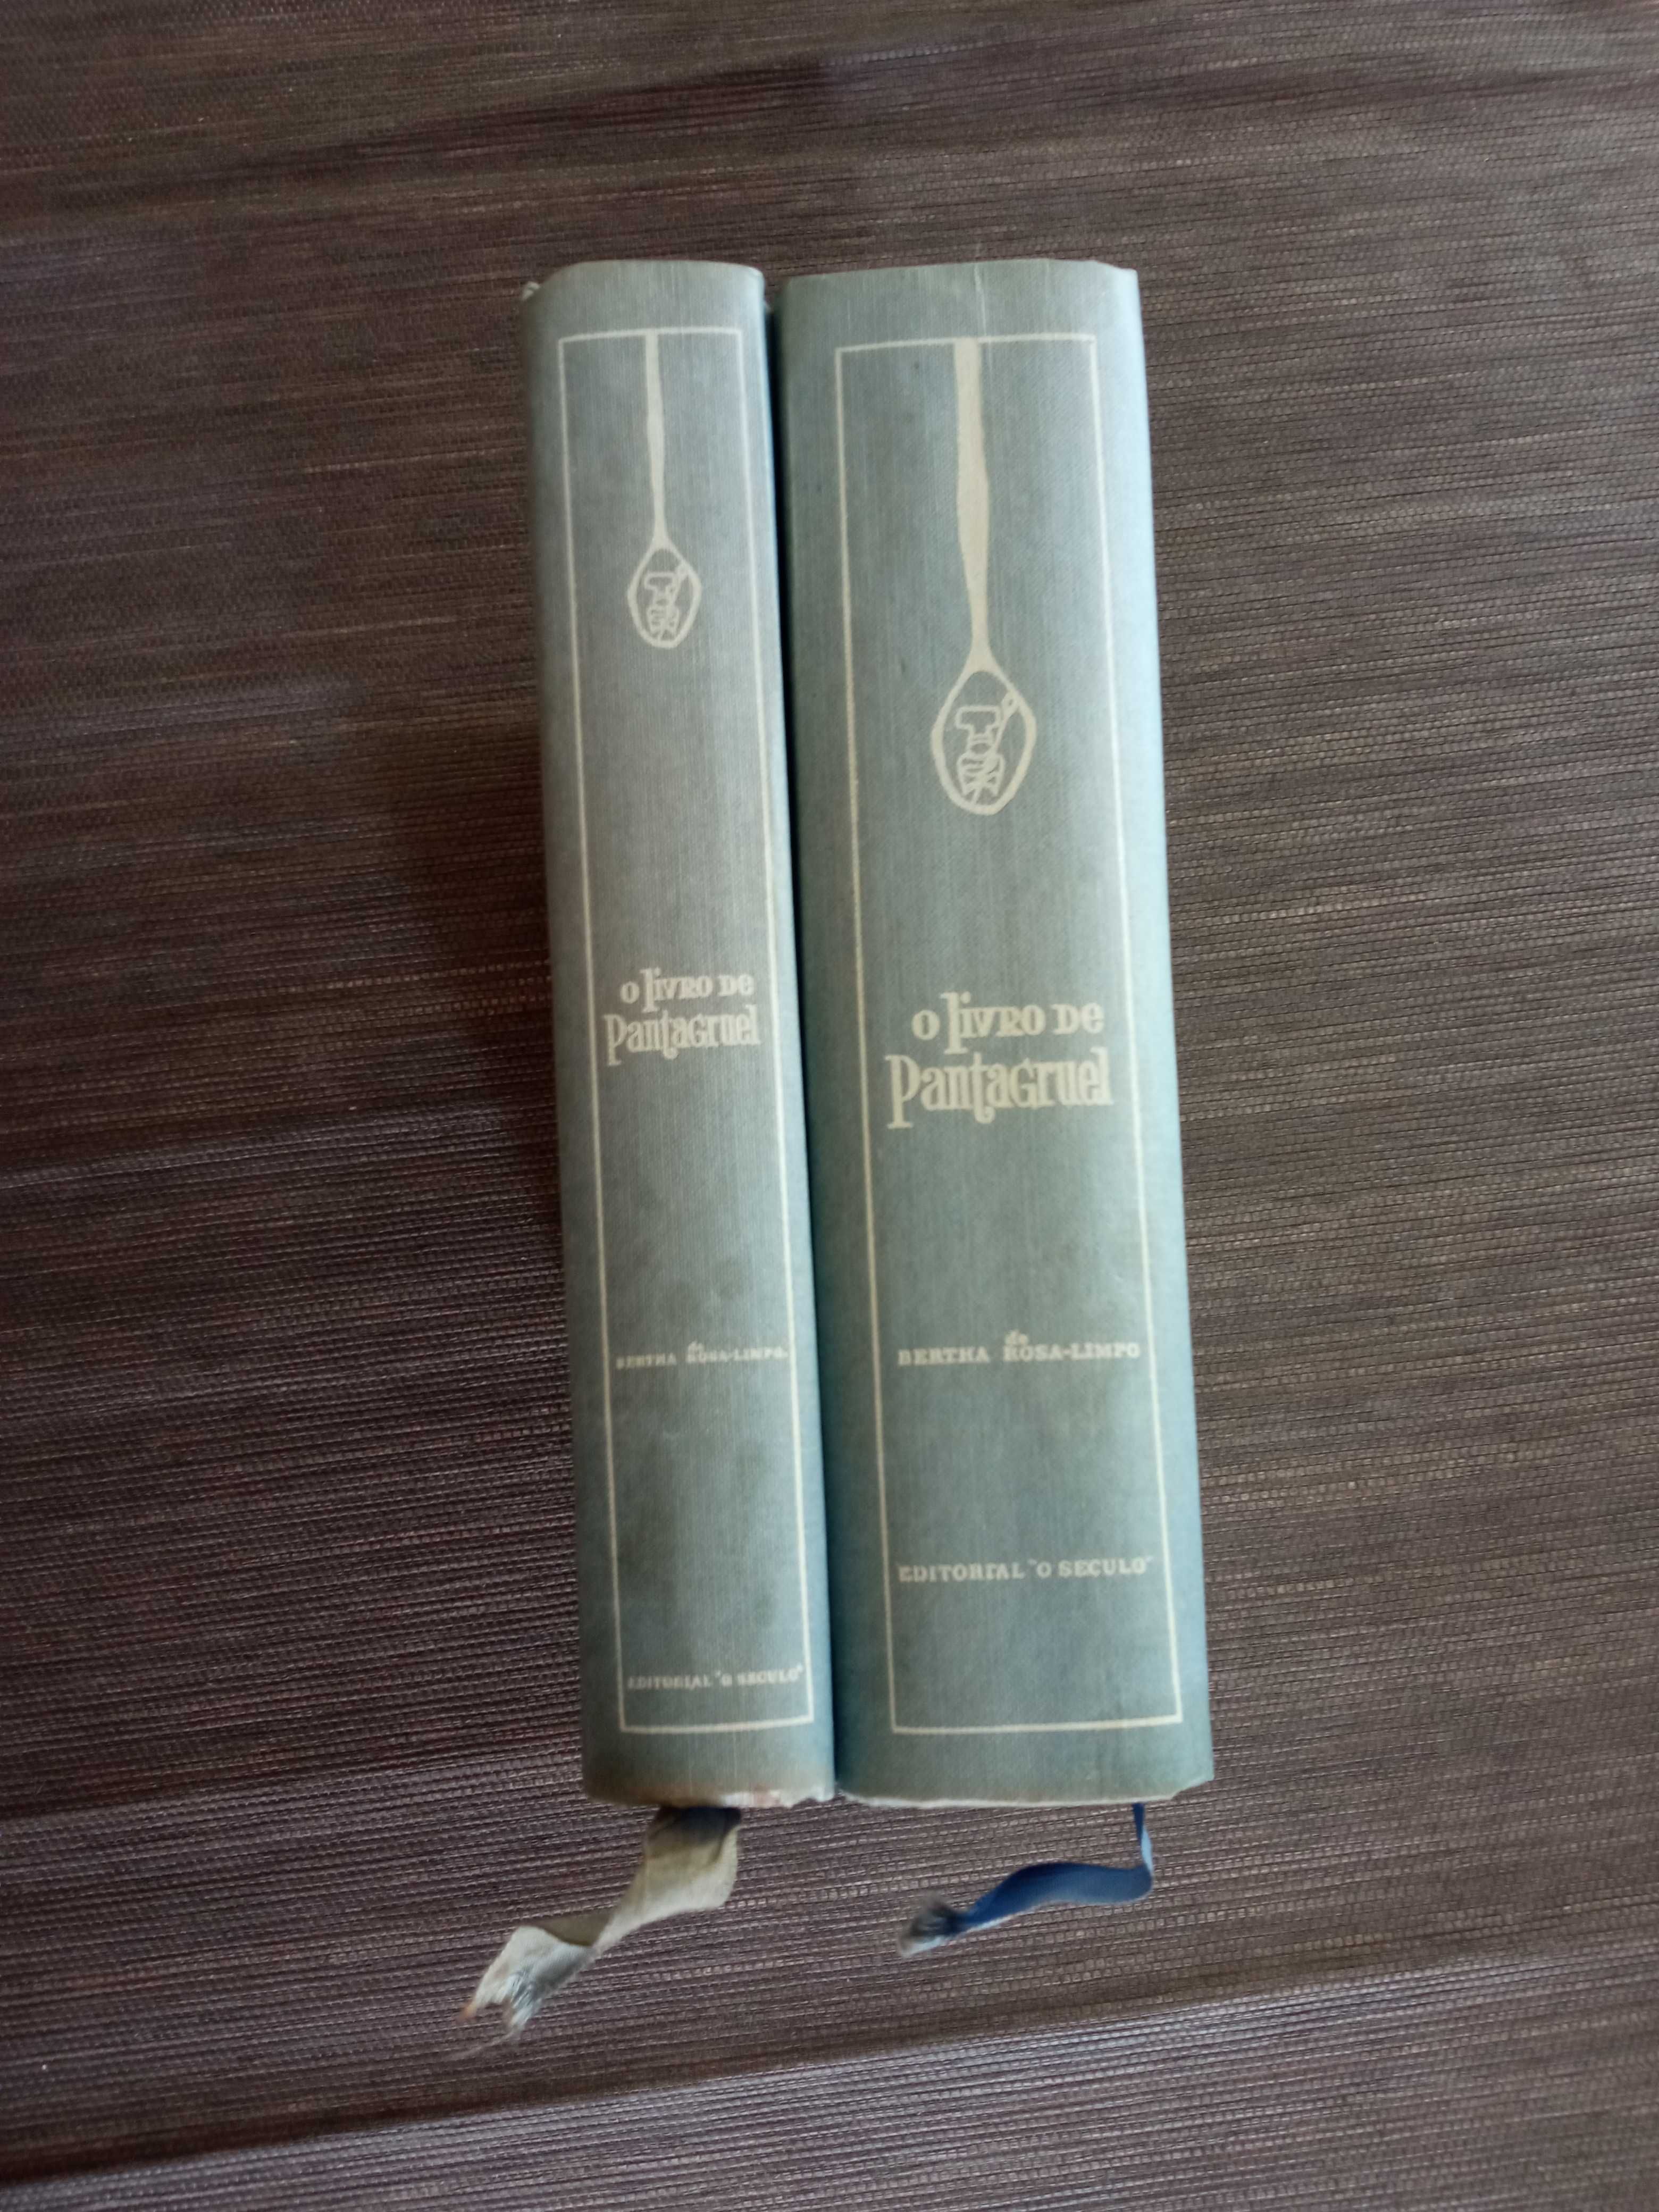 Livro de Pantagruel 2 volumes